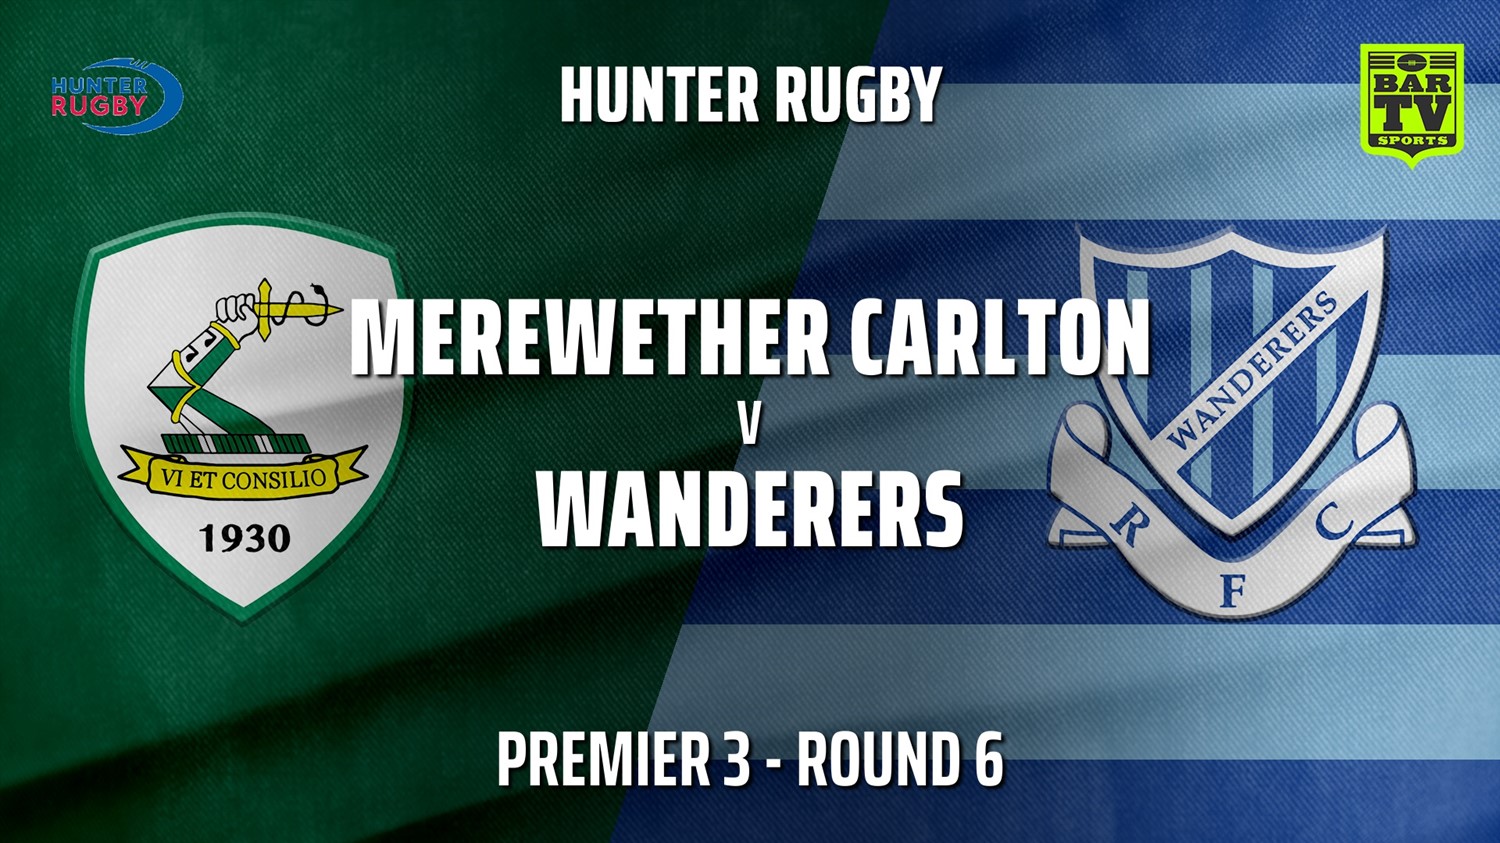 210522-HRU Round 6 - Premier 3 - Merewether Carlton v Wanderers Slate Image